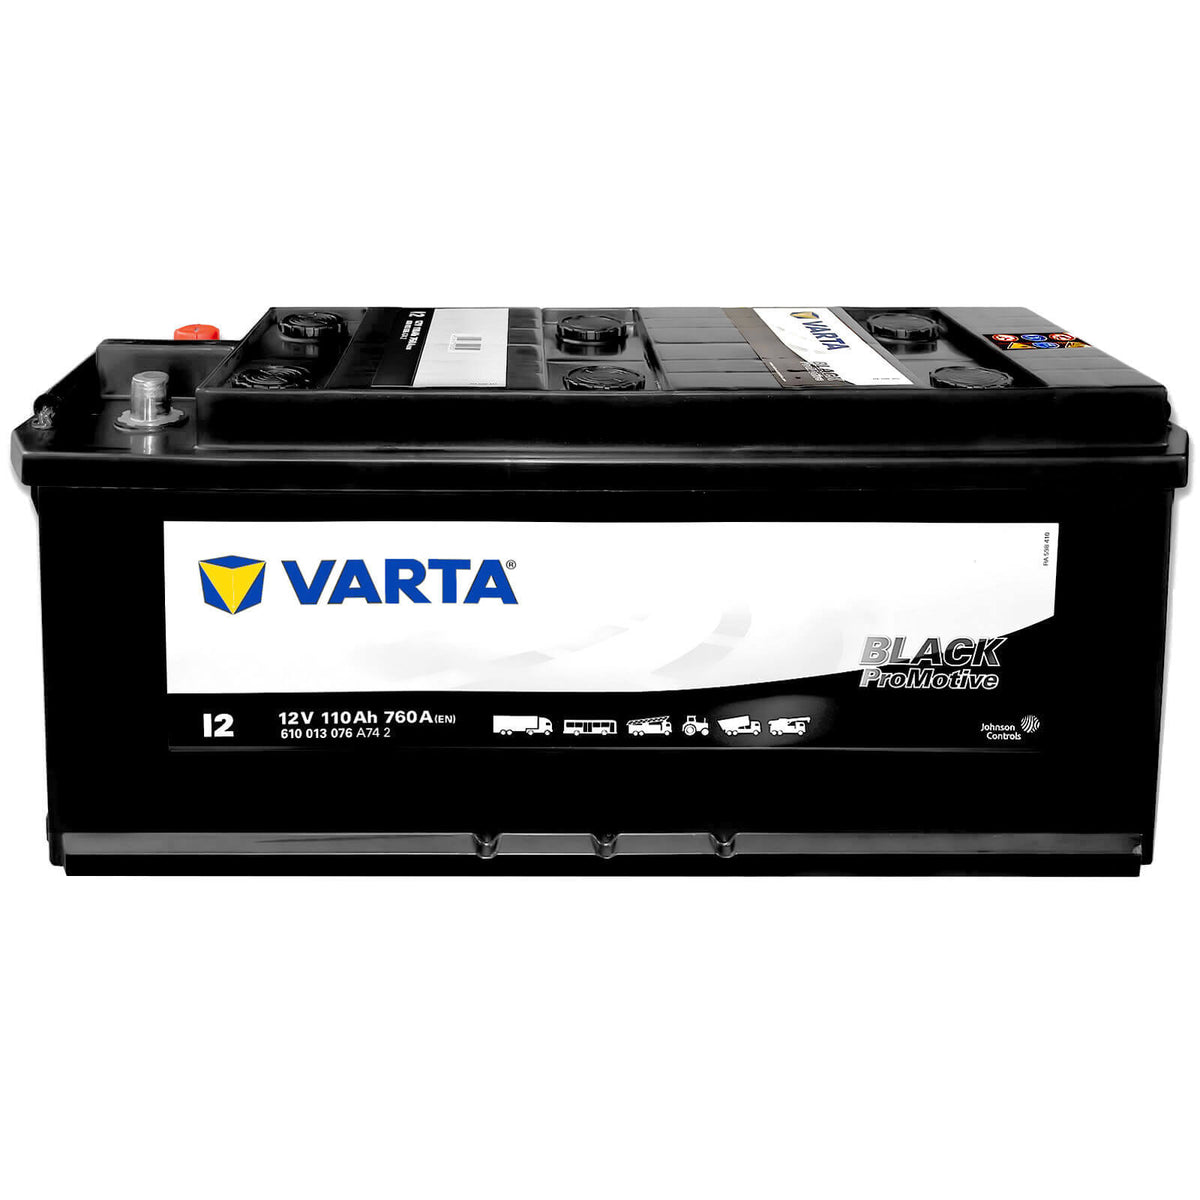 VARTA Batterien für Hyundai i10 online kaufen